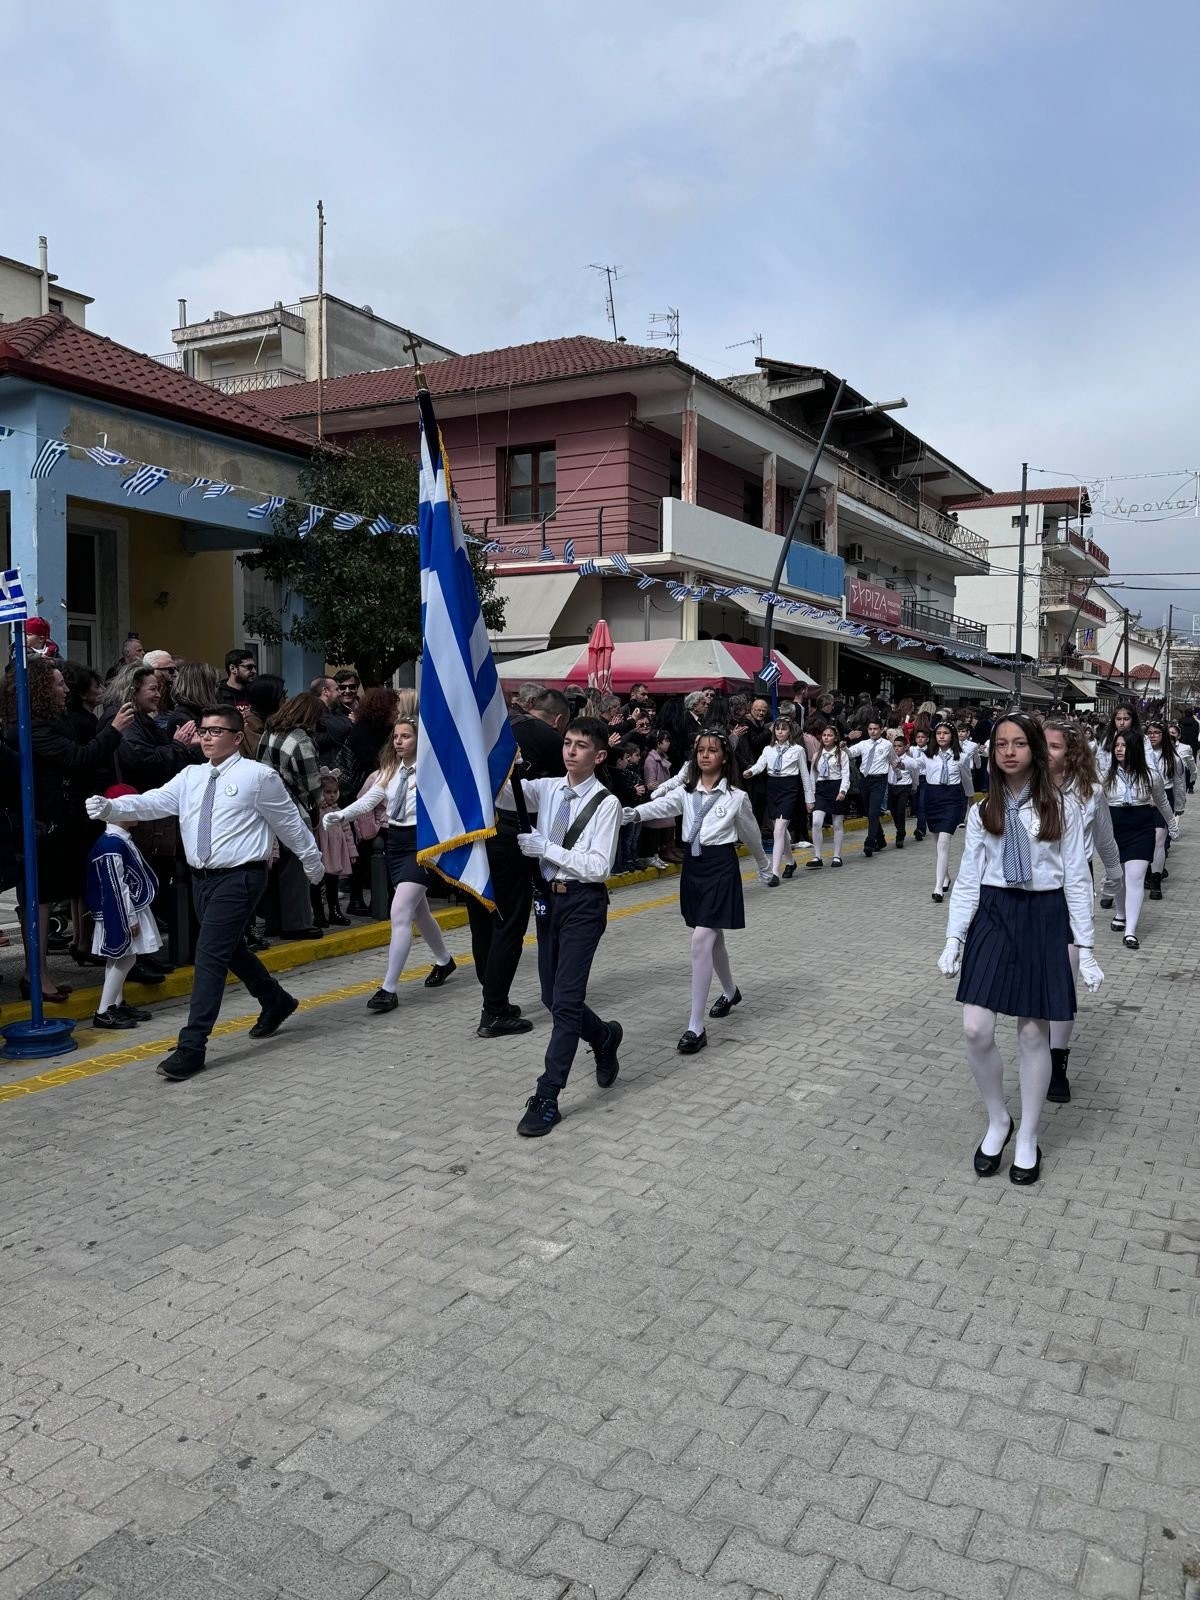 Λάκης Βασιλειάδης: «Τιμή μου να εκπροσωπώ την Βουλή για την 25η Μαρτίου στην Αλμωπία και την Αριδαία»